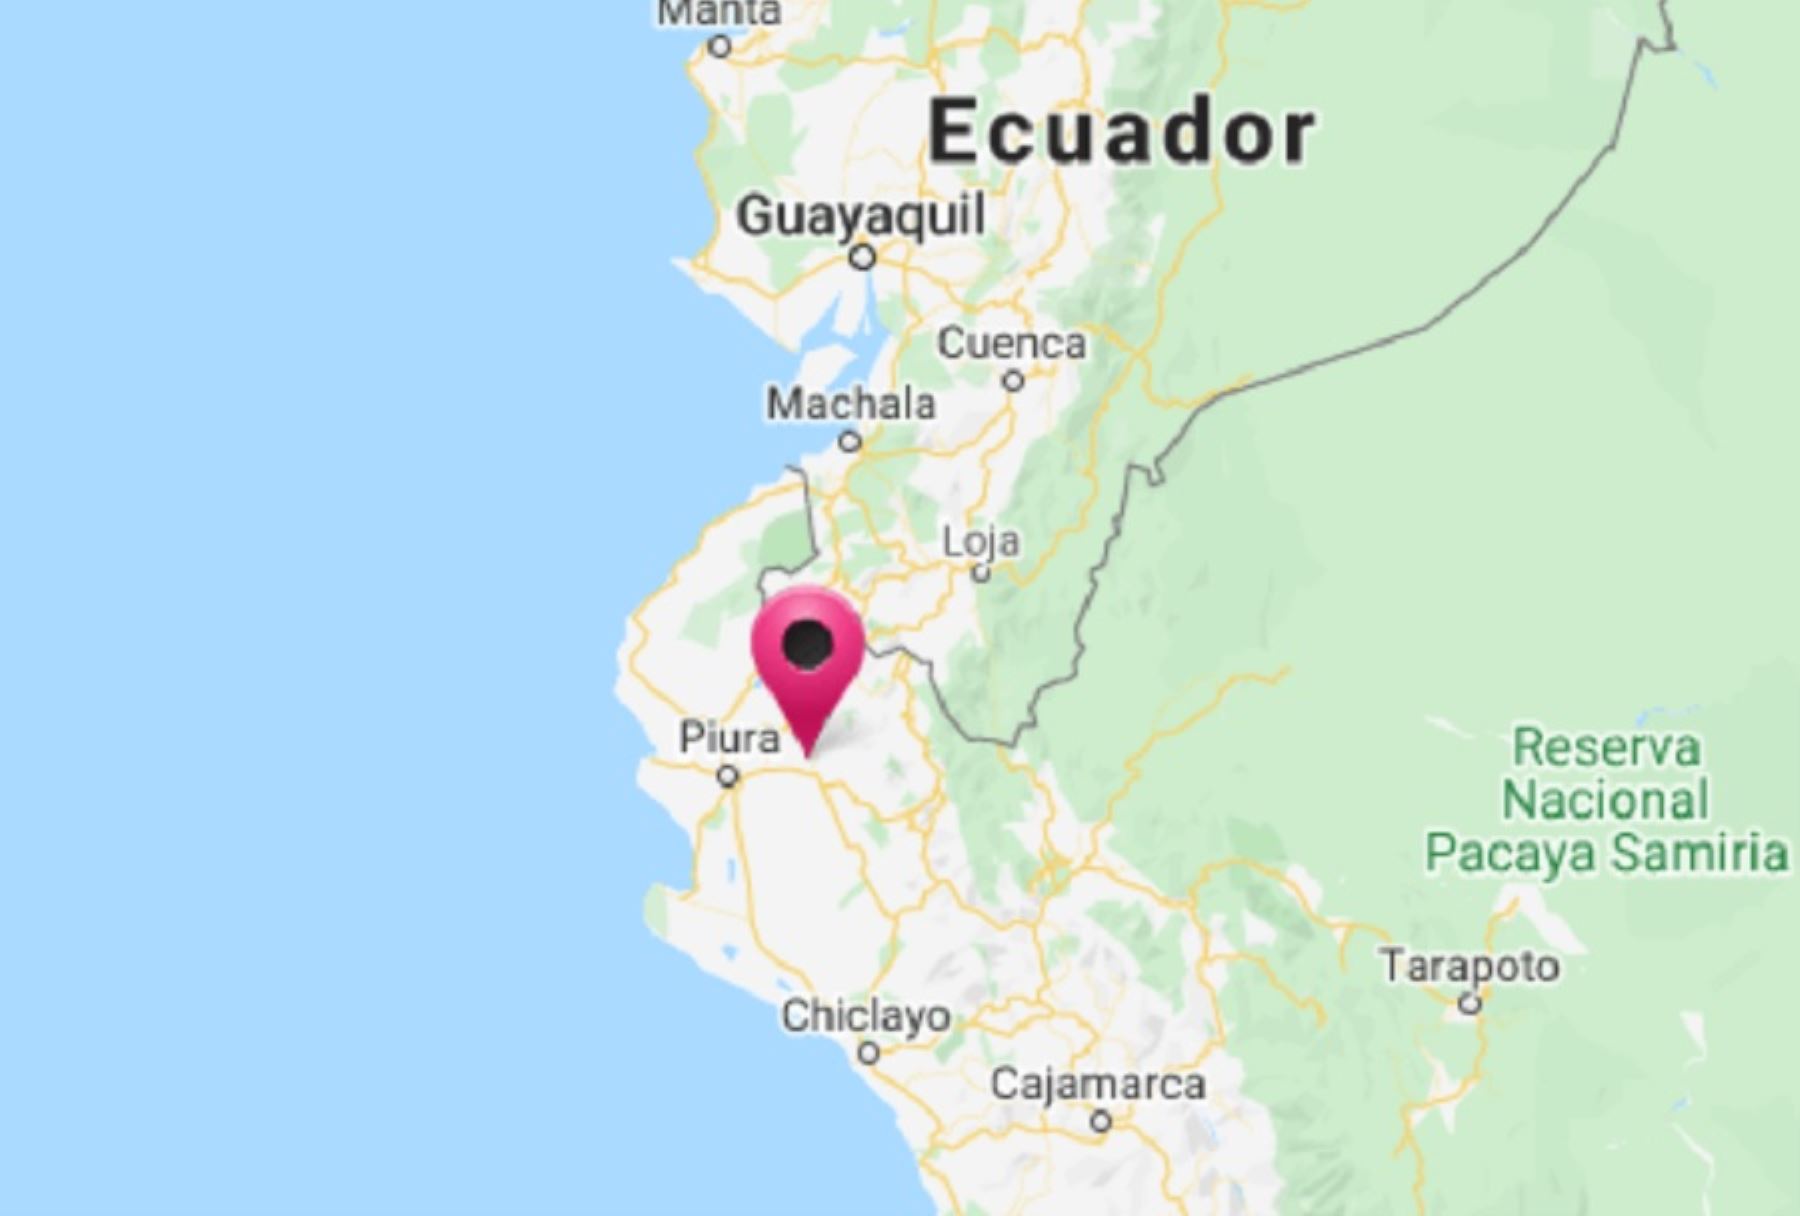 El más reciente temblor ocurrió en Piura, a las 05:45 horas y alcanzó una magnitud de 4.1, con una profundidad de 75 kilómetros.